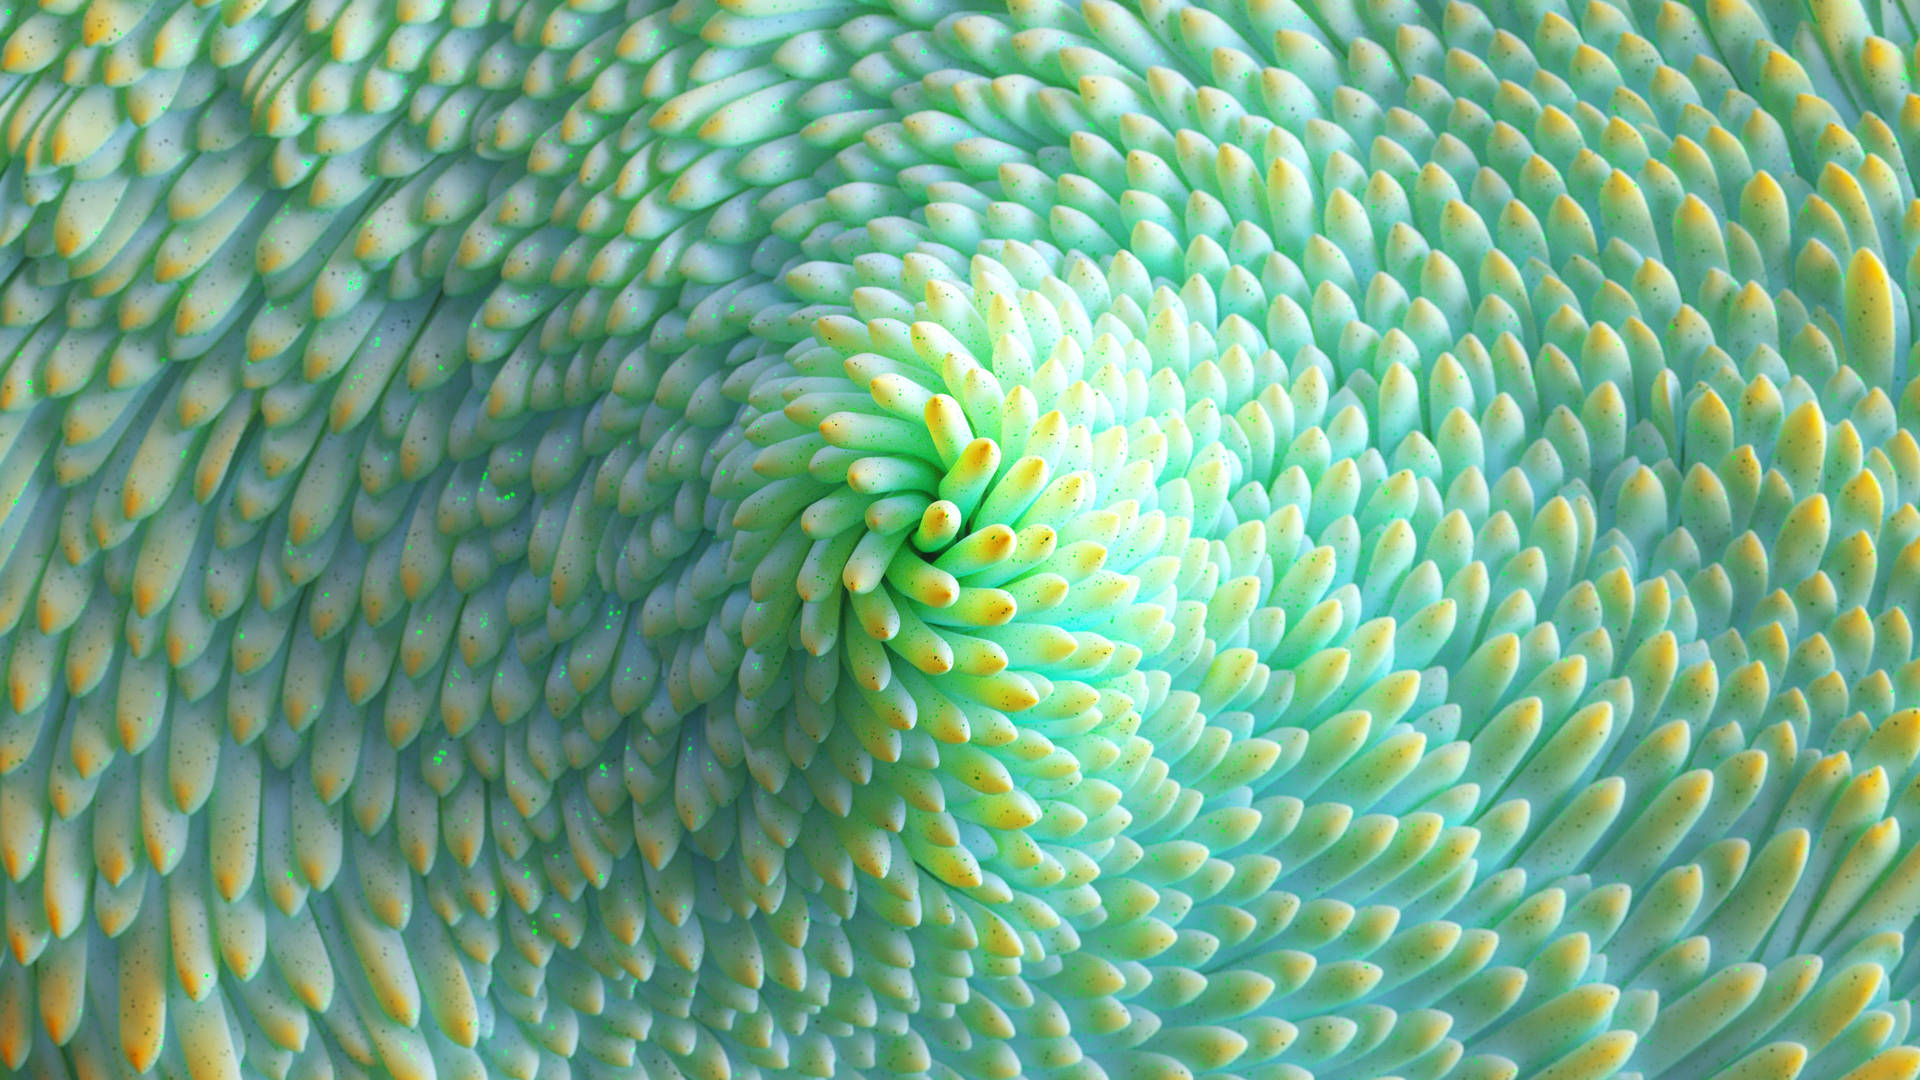 4d Ultra Hd Close-up Of Green Succulent Wallpaper